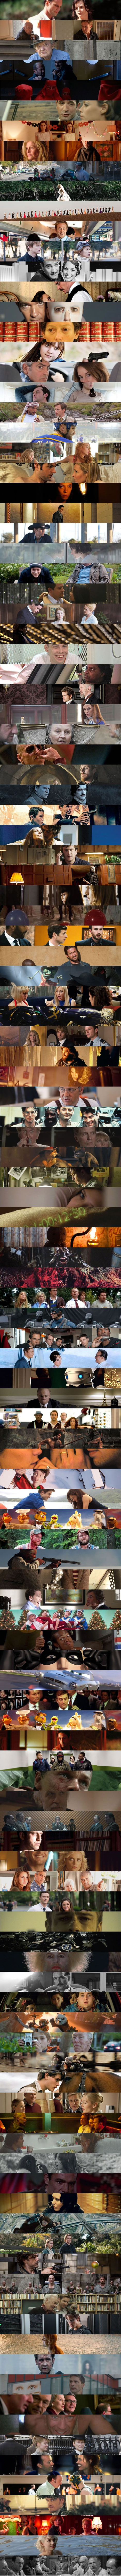 2011-movie-journal-collage-2s